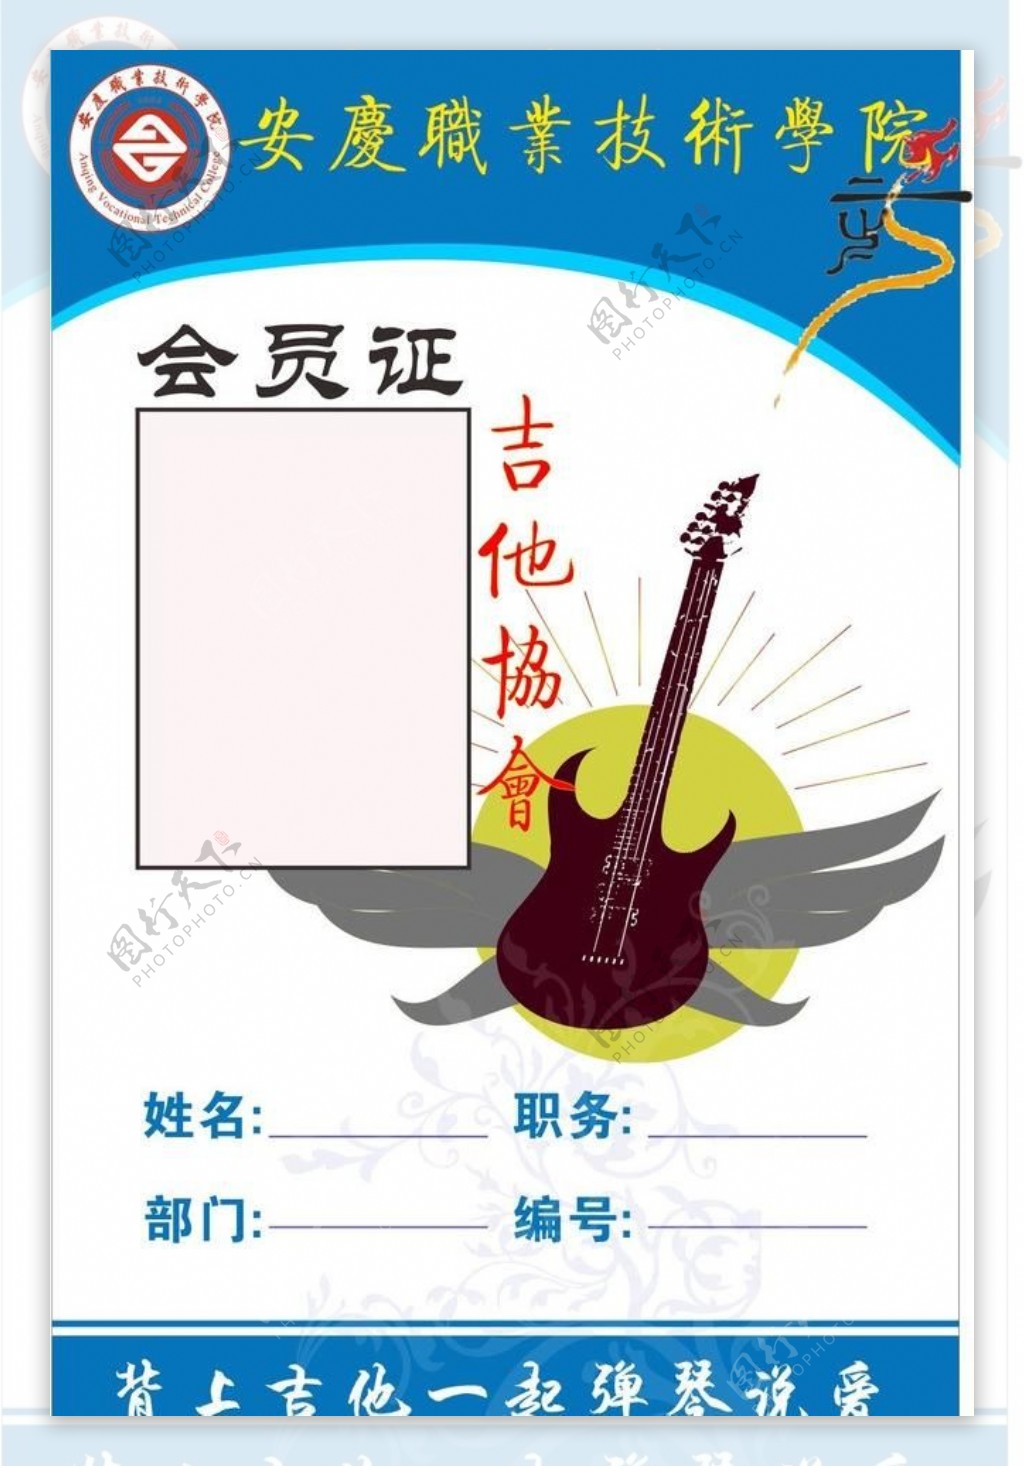 吉他协会会员证图片